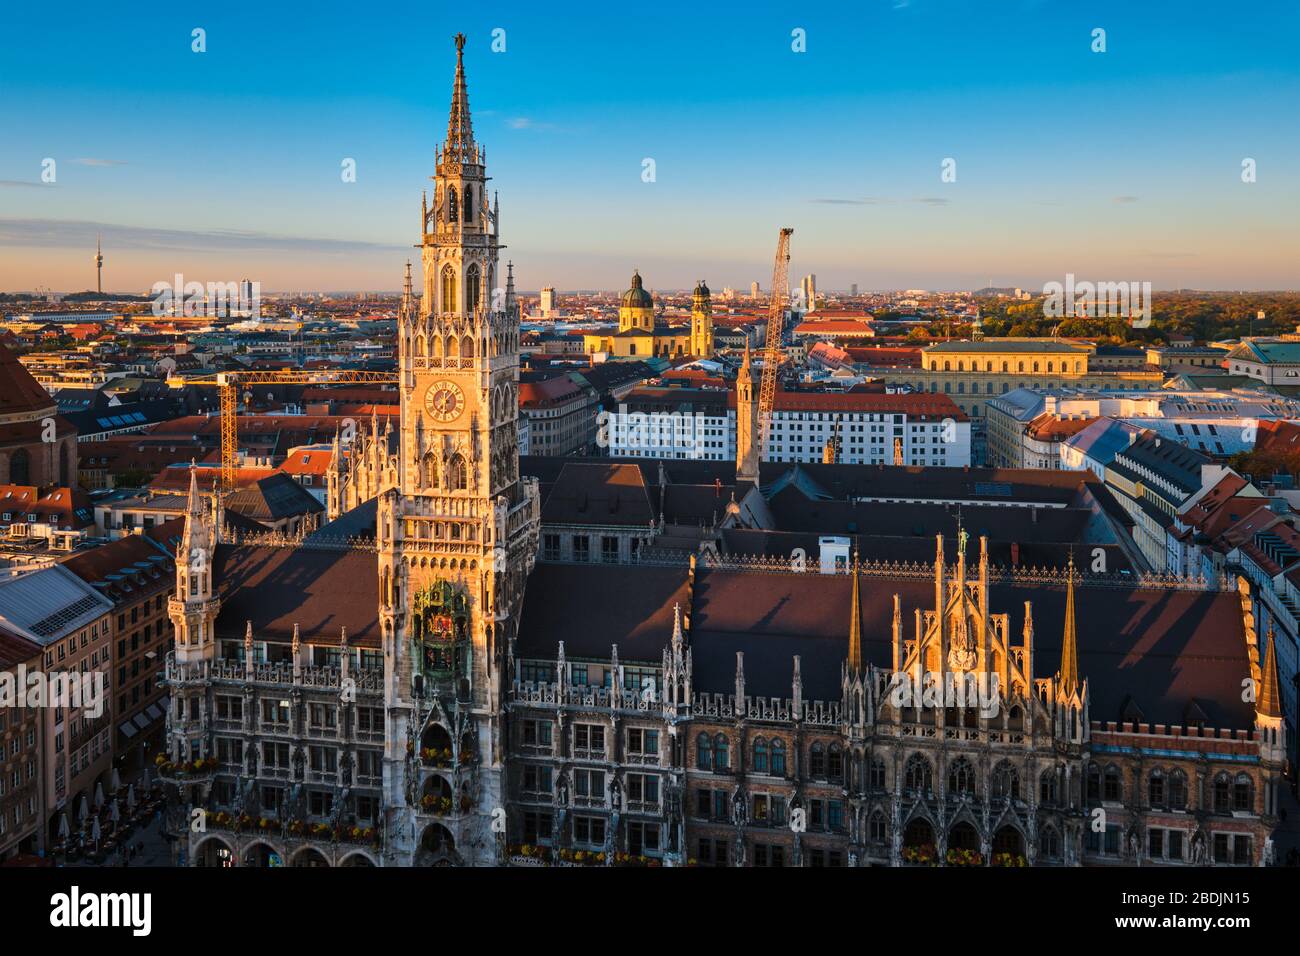 Vue aérienne de Munich, Allemagne Banque D'Images